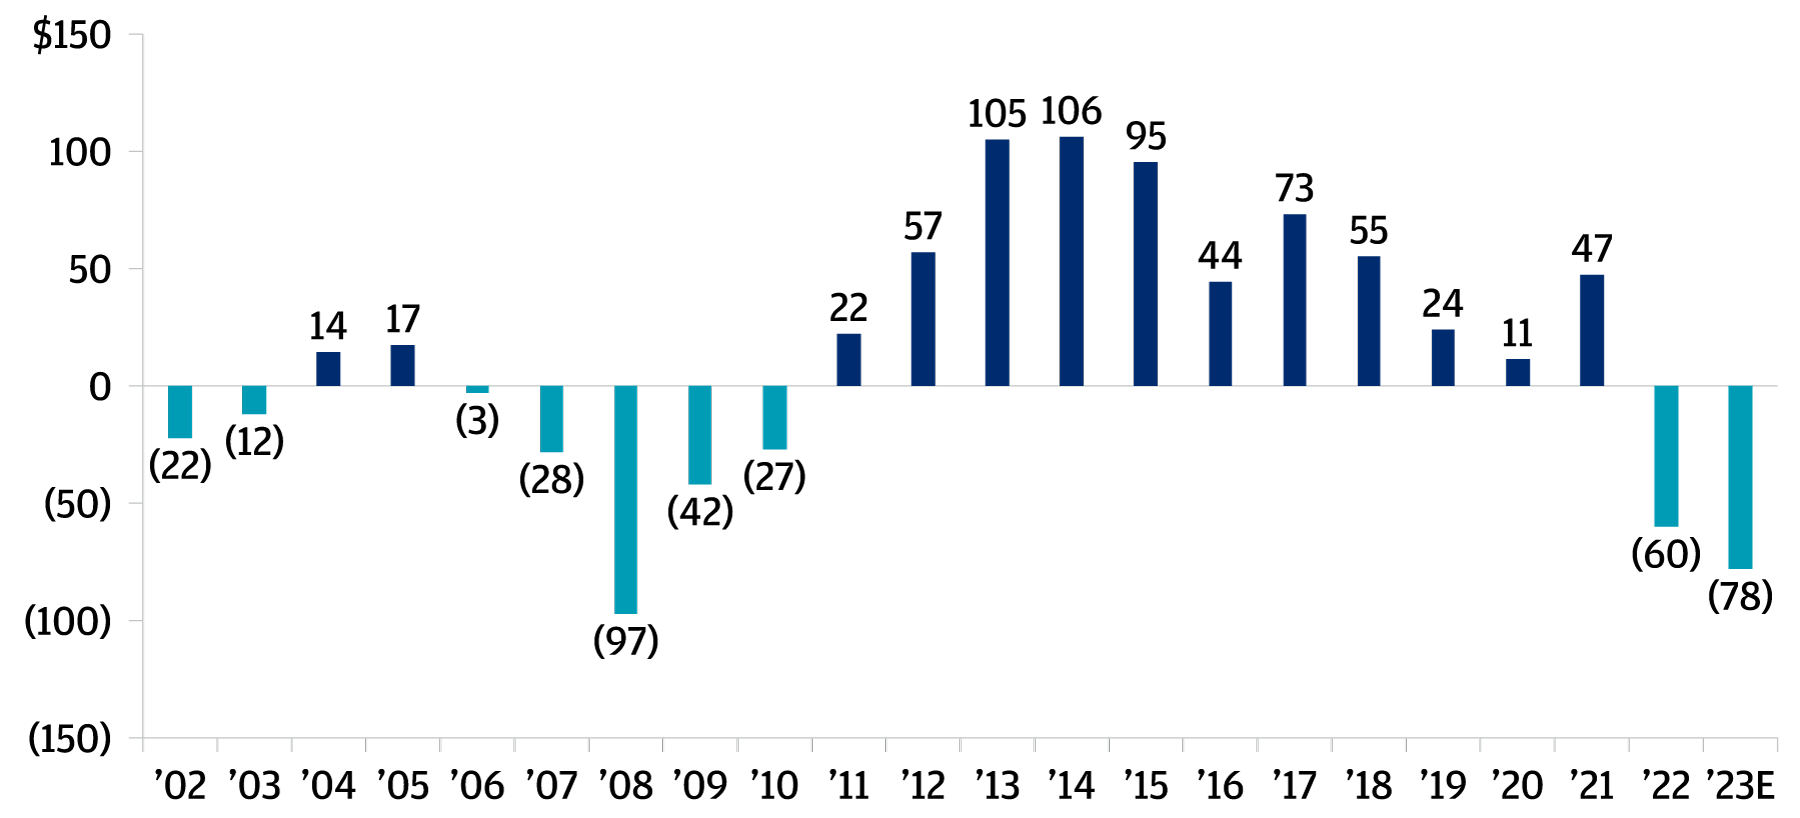 Histogramme montrant les flux de trésorerie nets des limited partners au cours des années 2022 et 2023 et comment, pour la première fois depuis la crise financière mondiale de 2006 à 2010, les flux provenant des limited partners sont devenus négatifs en 2022 et début 2023.